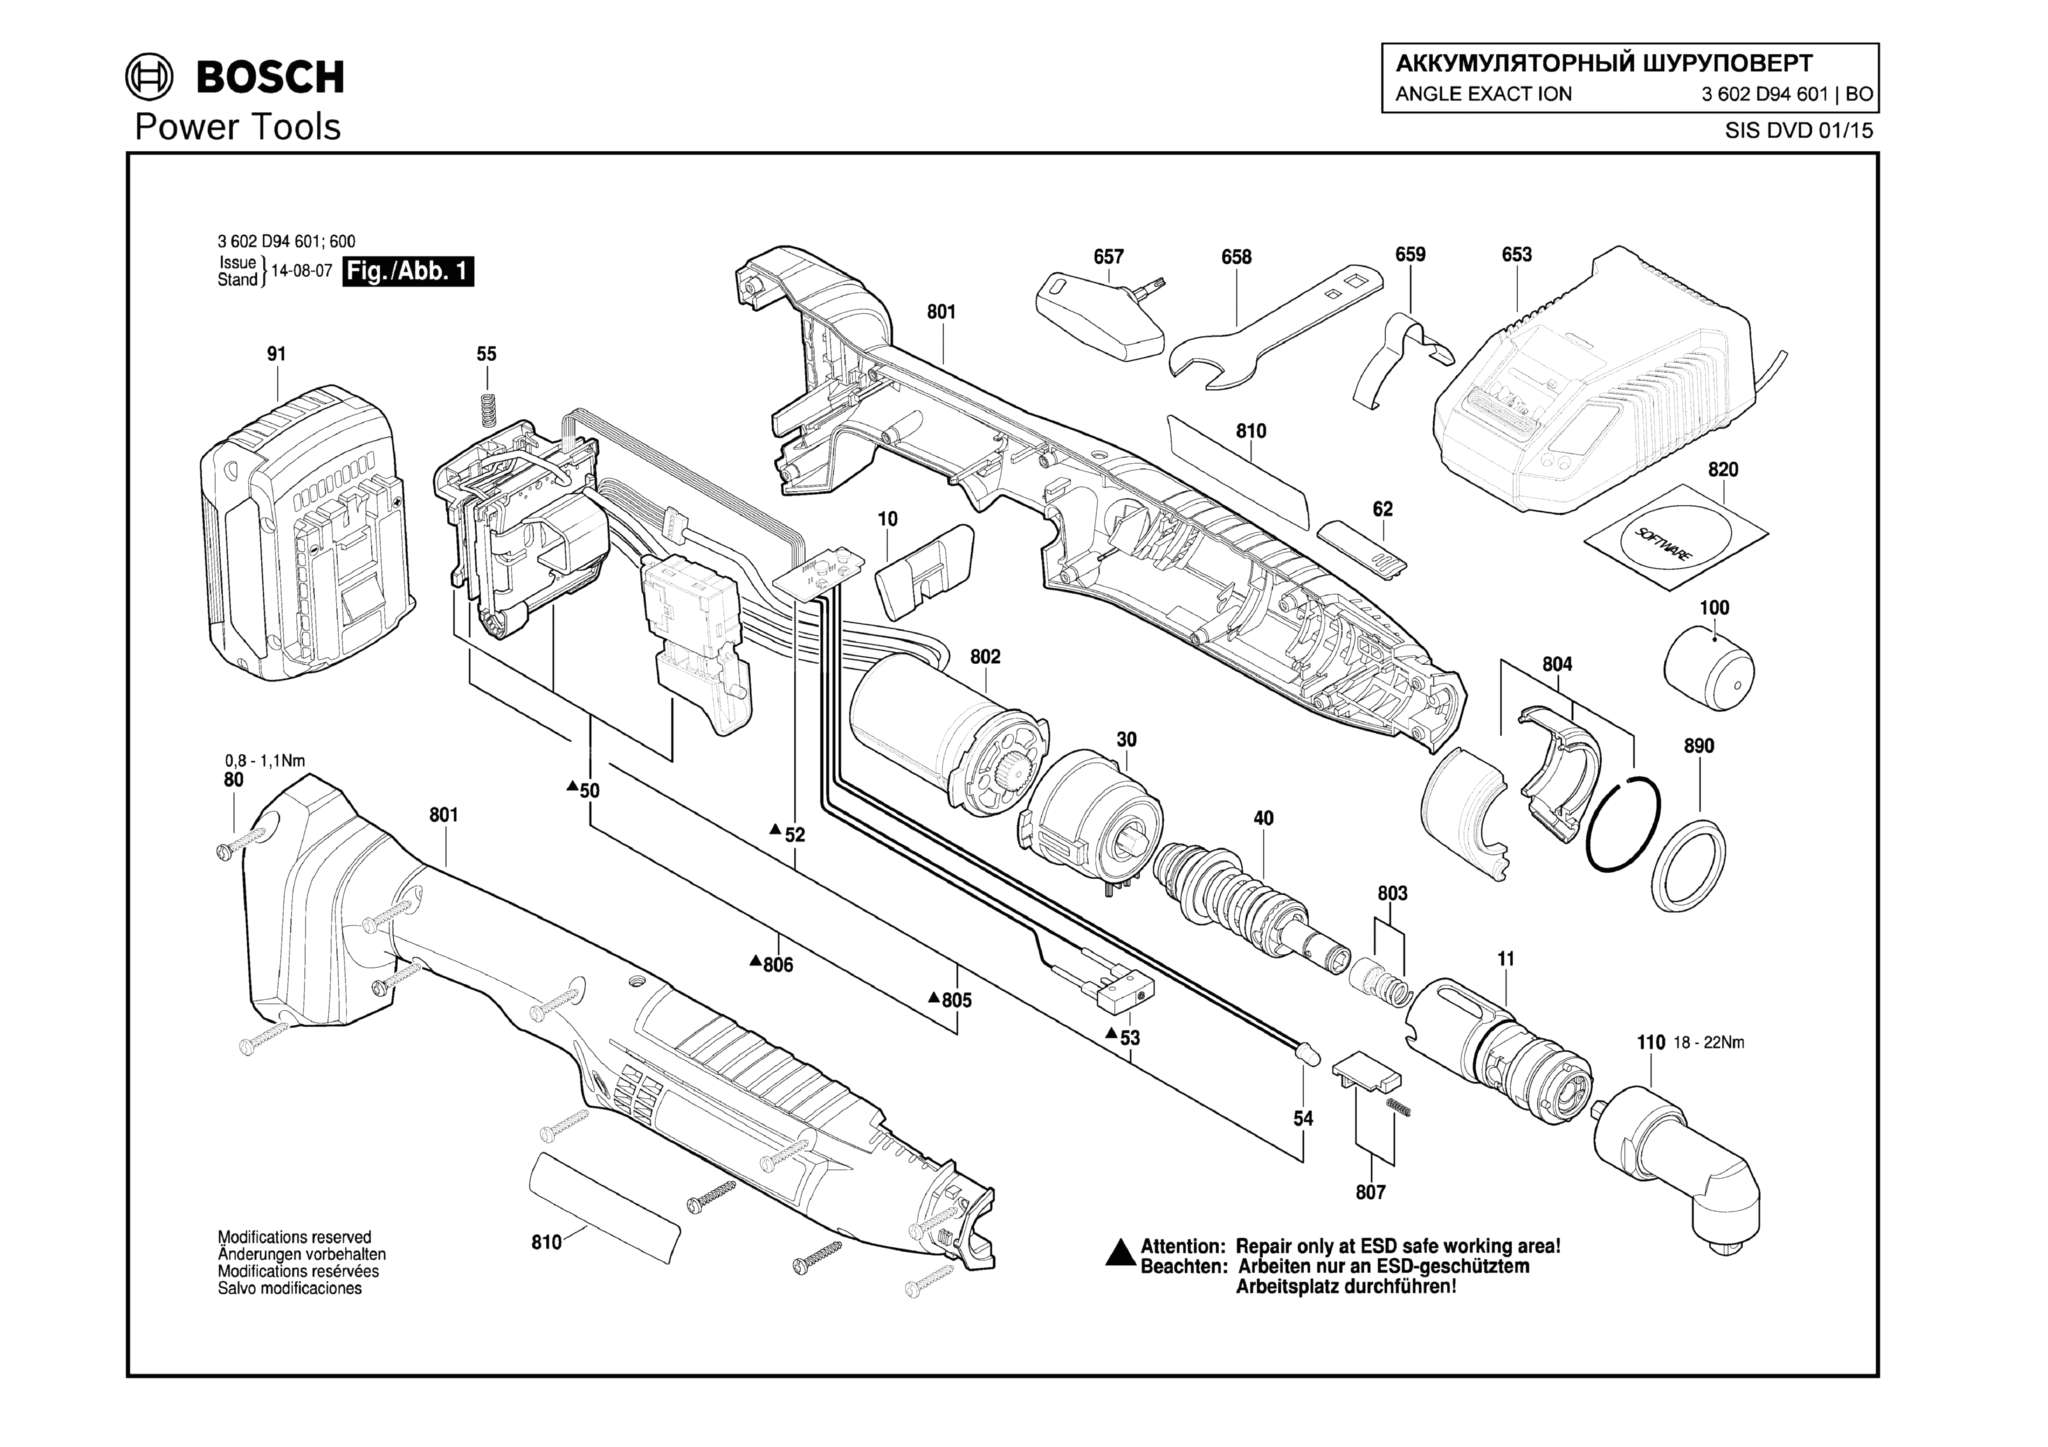 Запчасти, схема и деталировка Bosch ANGLE EXACT ION 15-500 (ТИП 3602D94601)